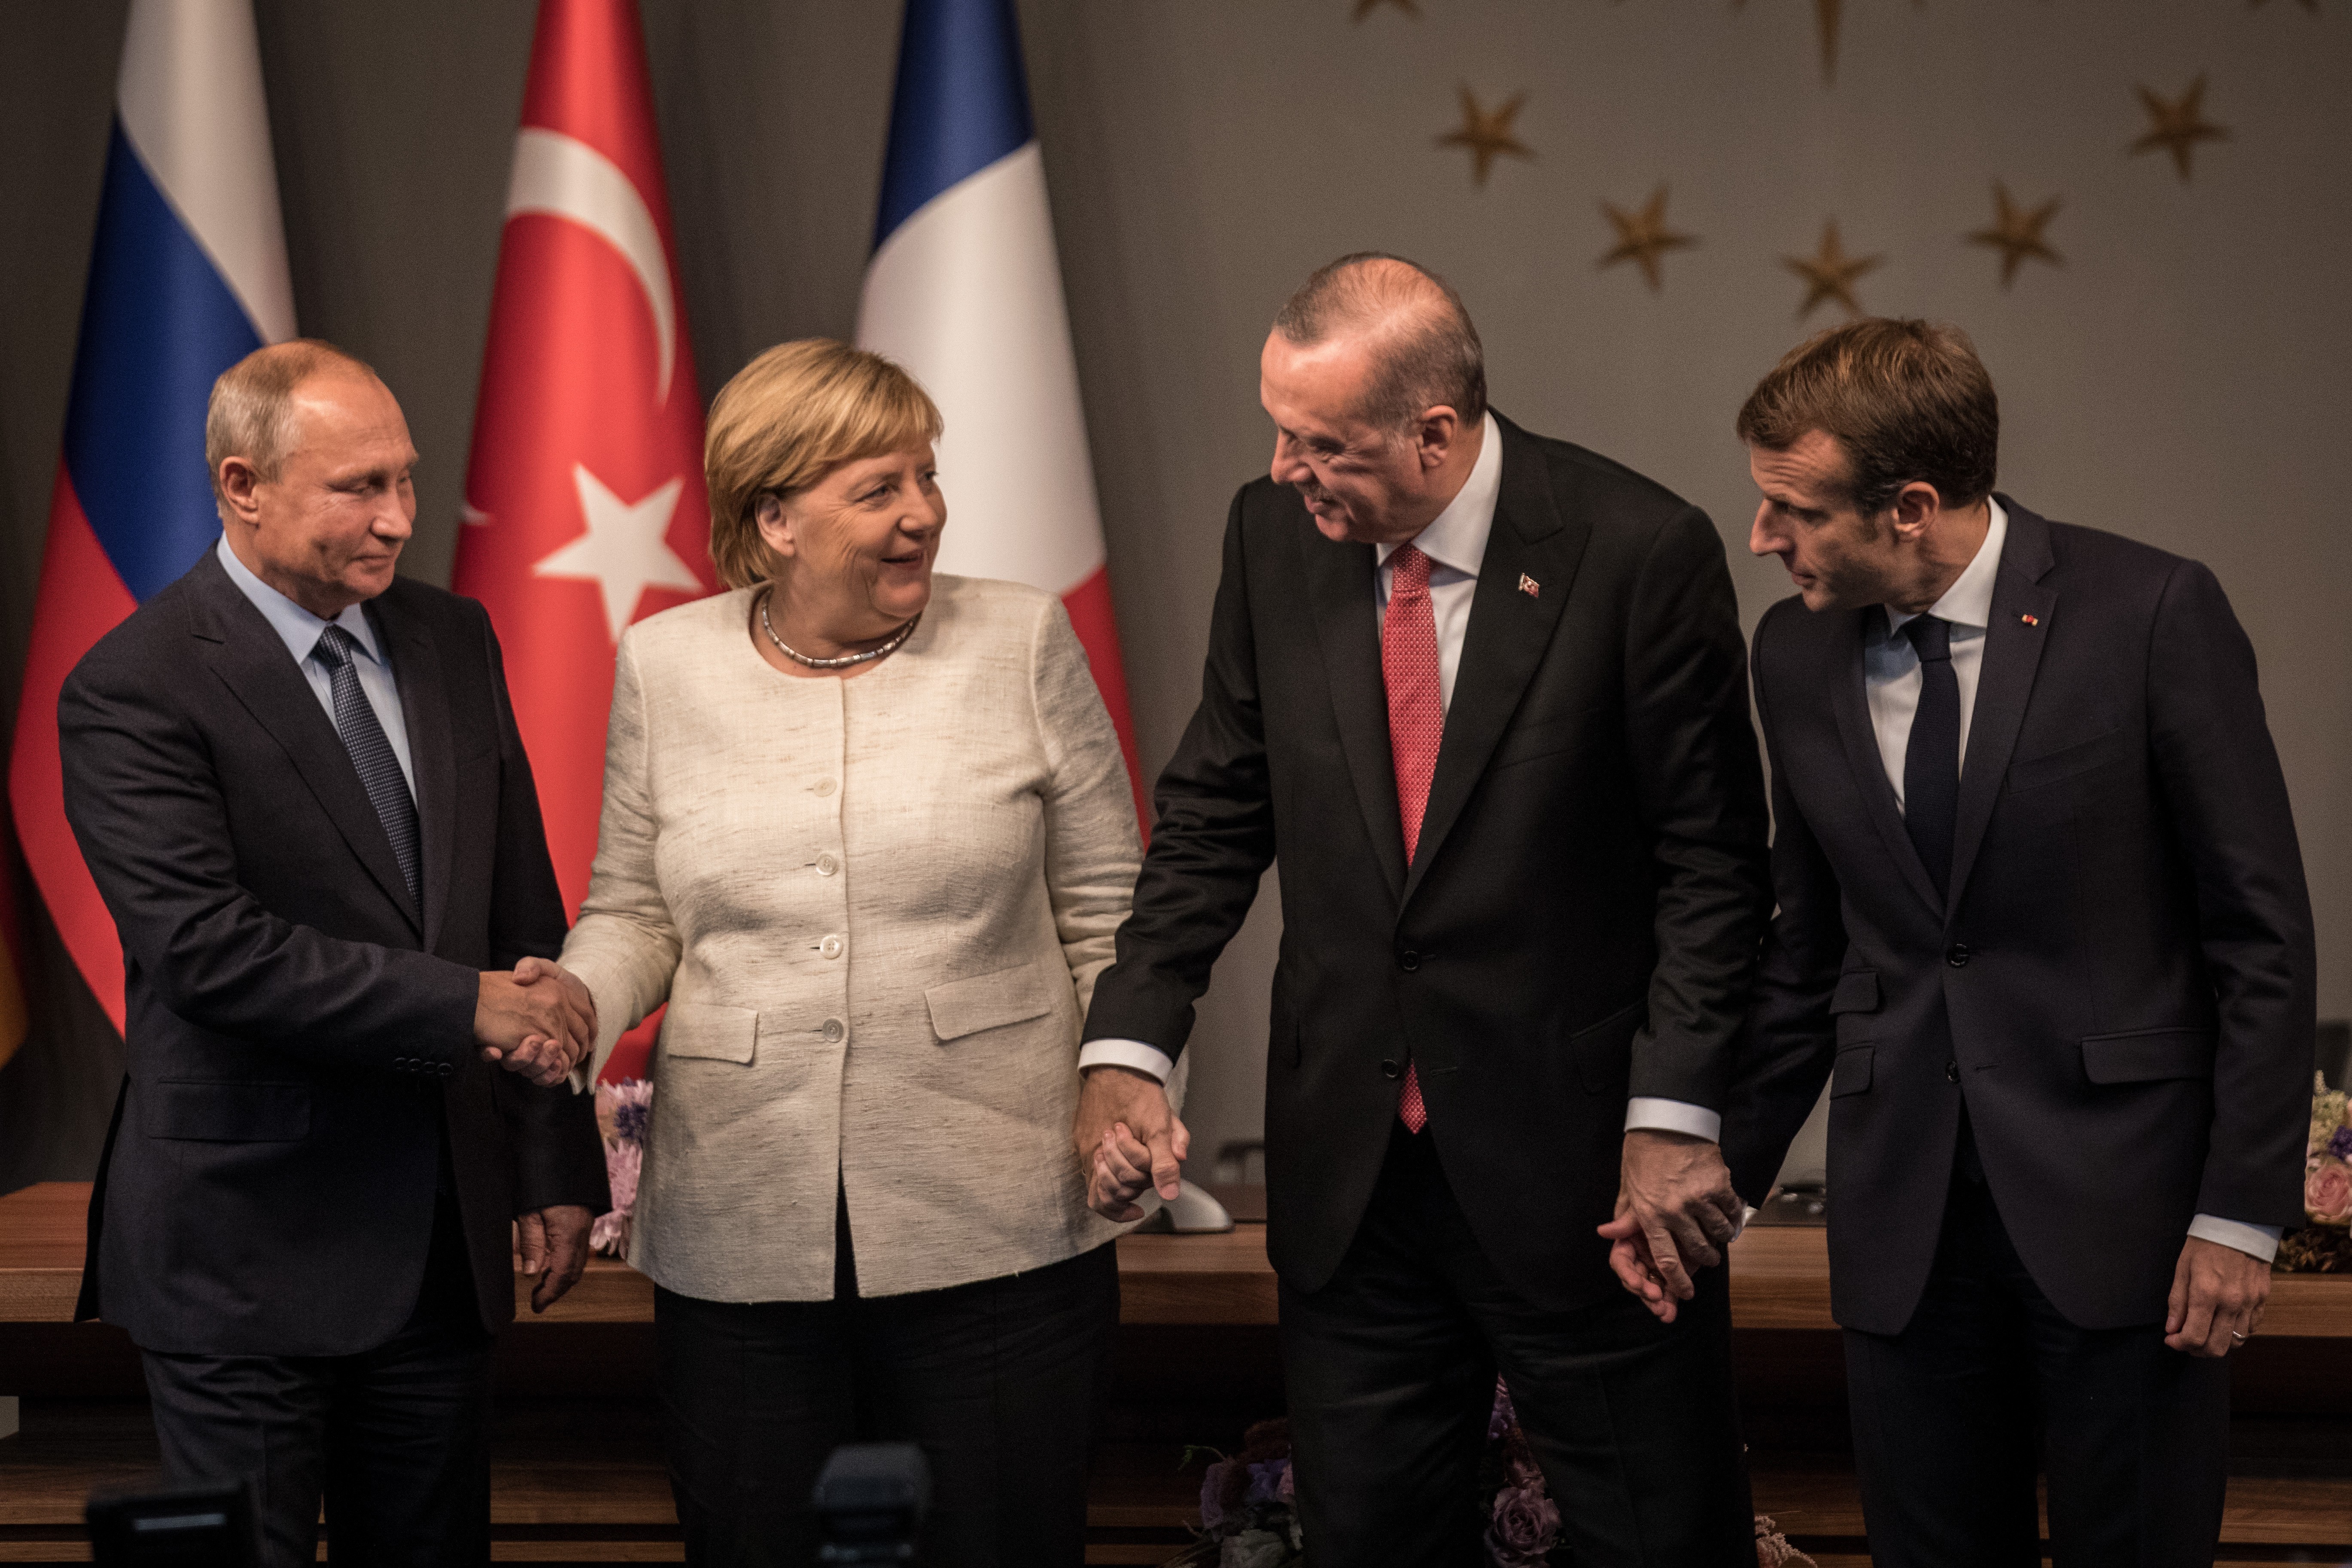 Немецкий журналист осудил дружелюбие Меркель на встрече с Путиным и Эрдоганом